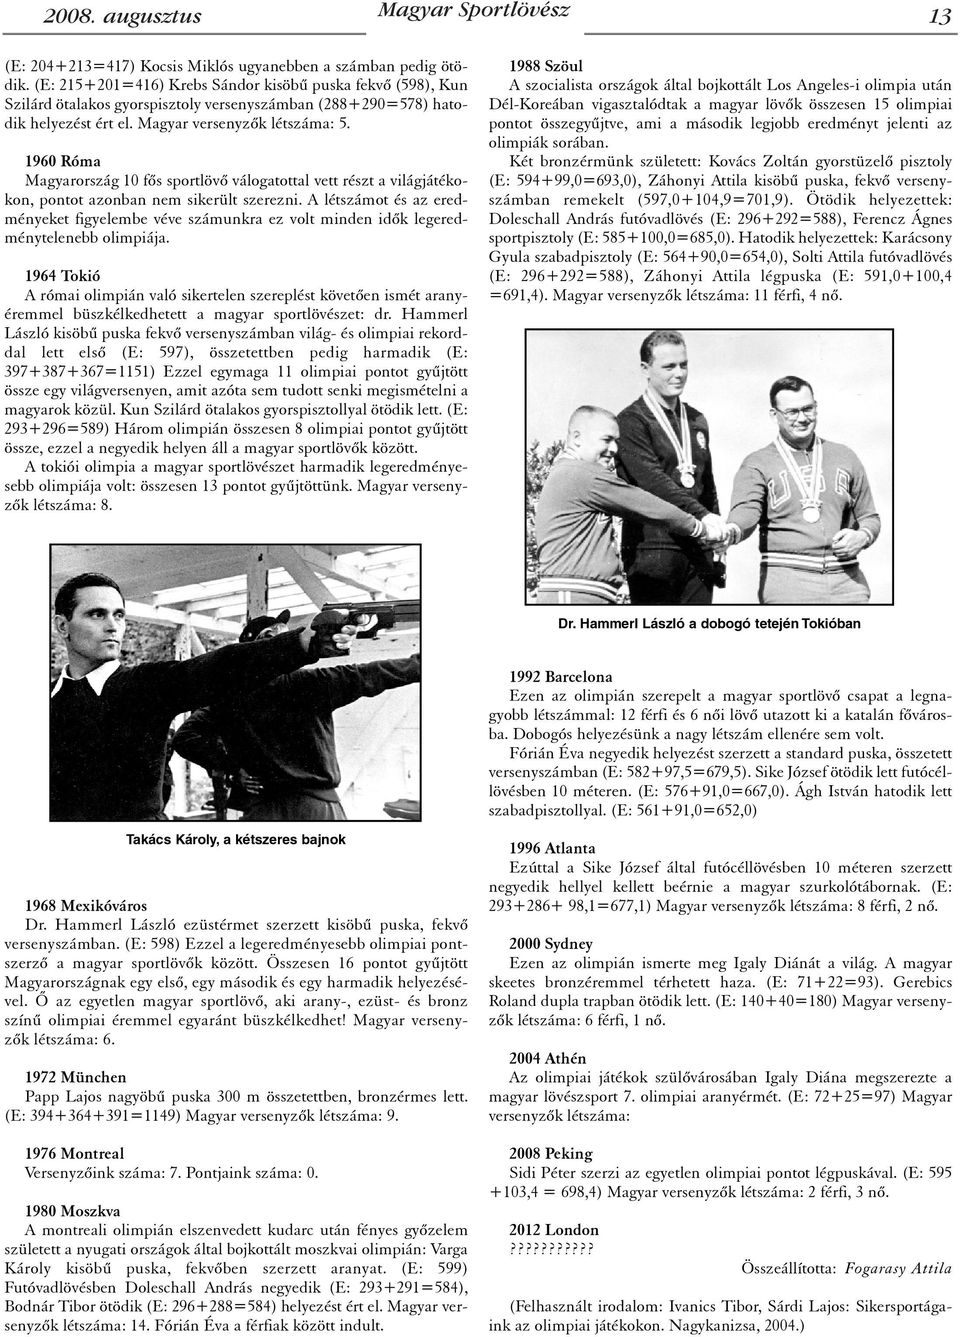 1960 Róma Magyarország 10 fõs sportlövõ válogatottal vett részt a világjátékokon, pontot azonban nem sikerült szerezni.